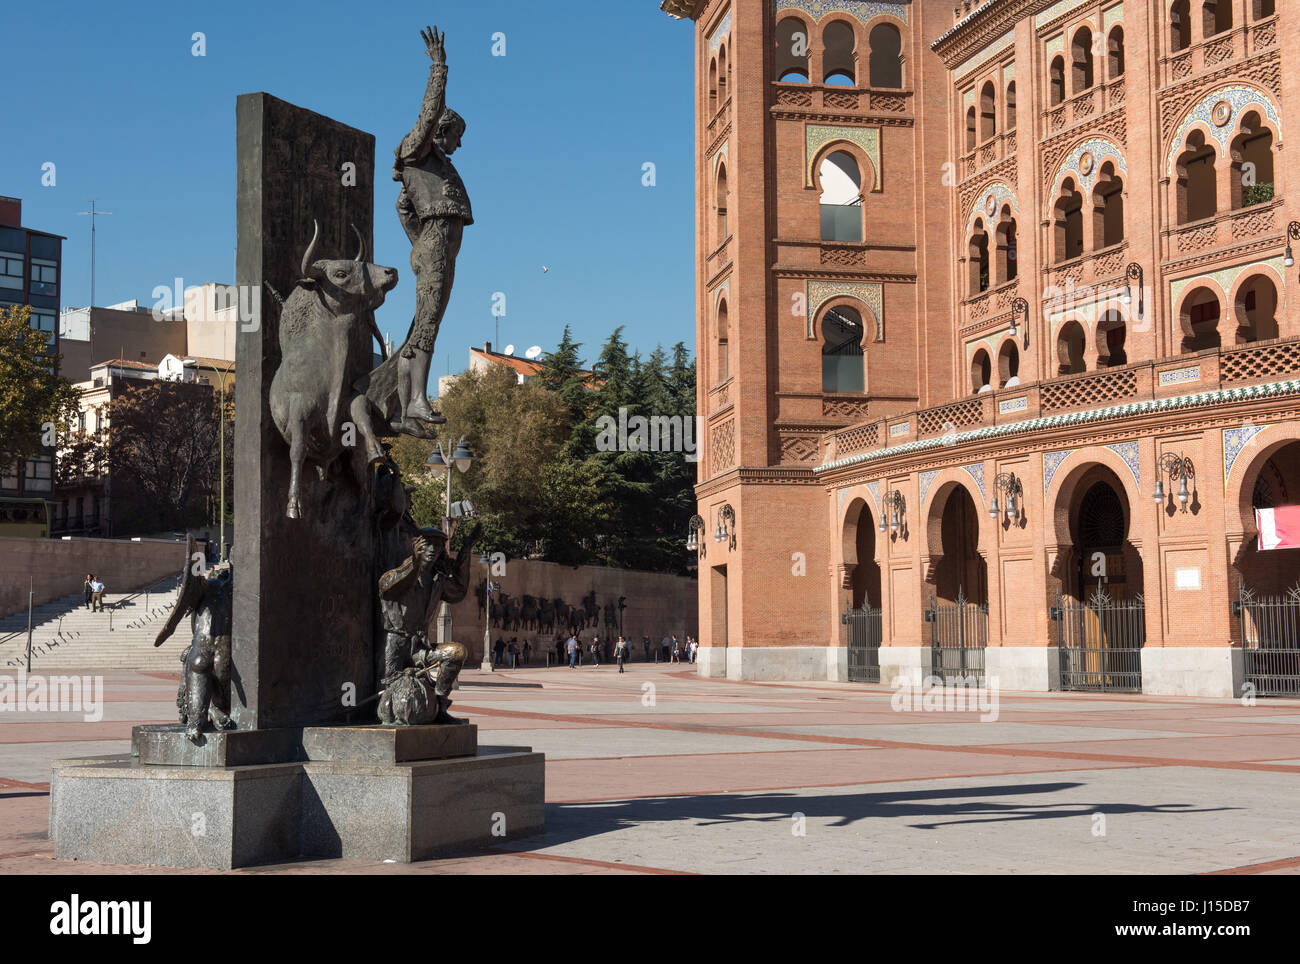 La ciudad de Madrid en noviembre - fotos de España Foto de stock